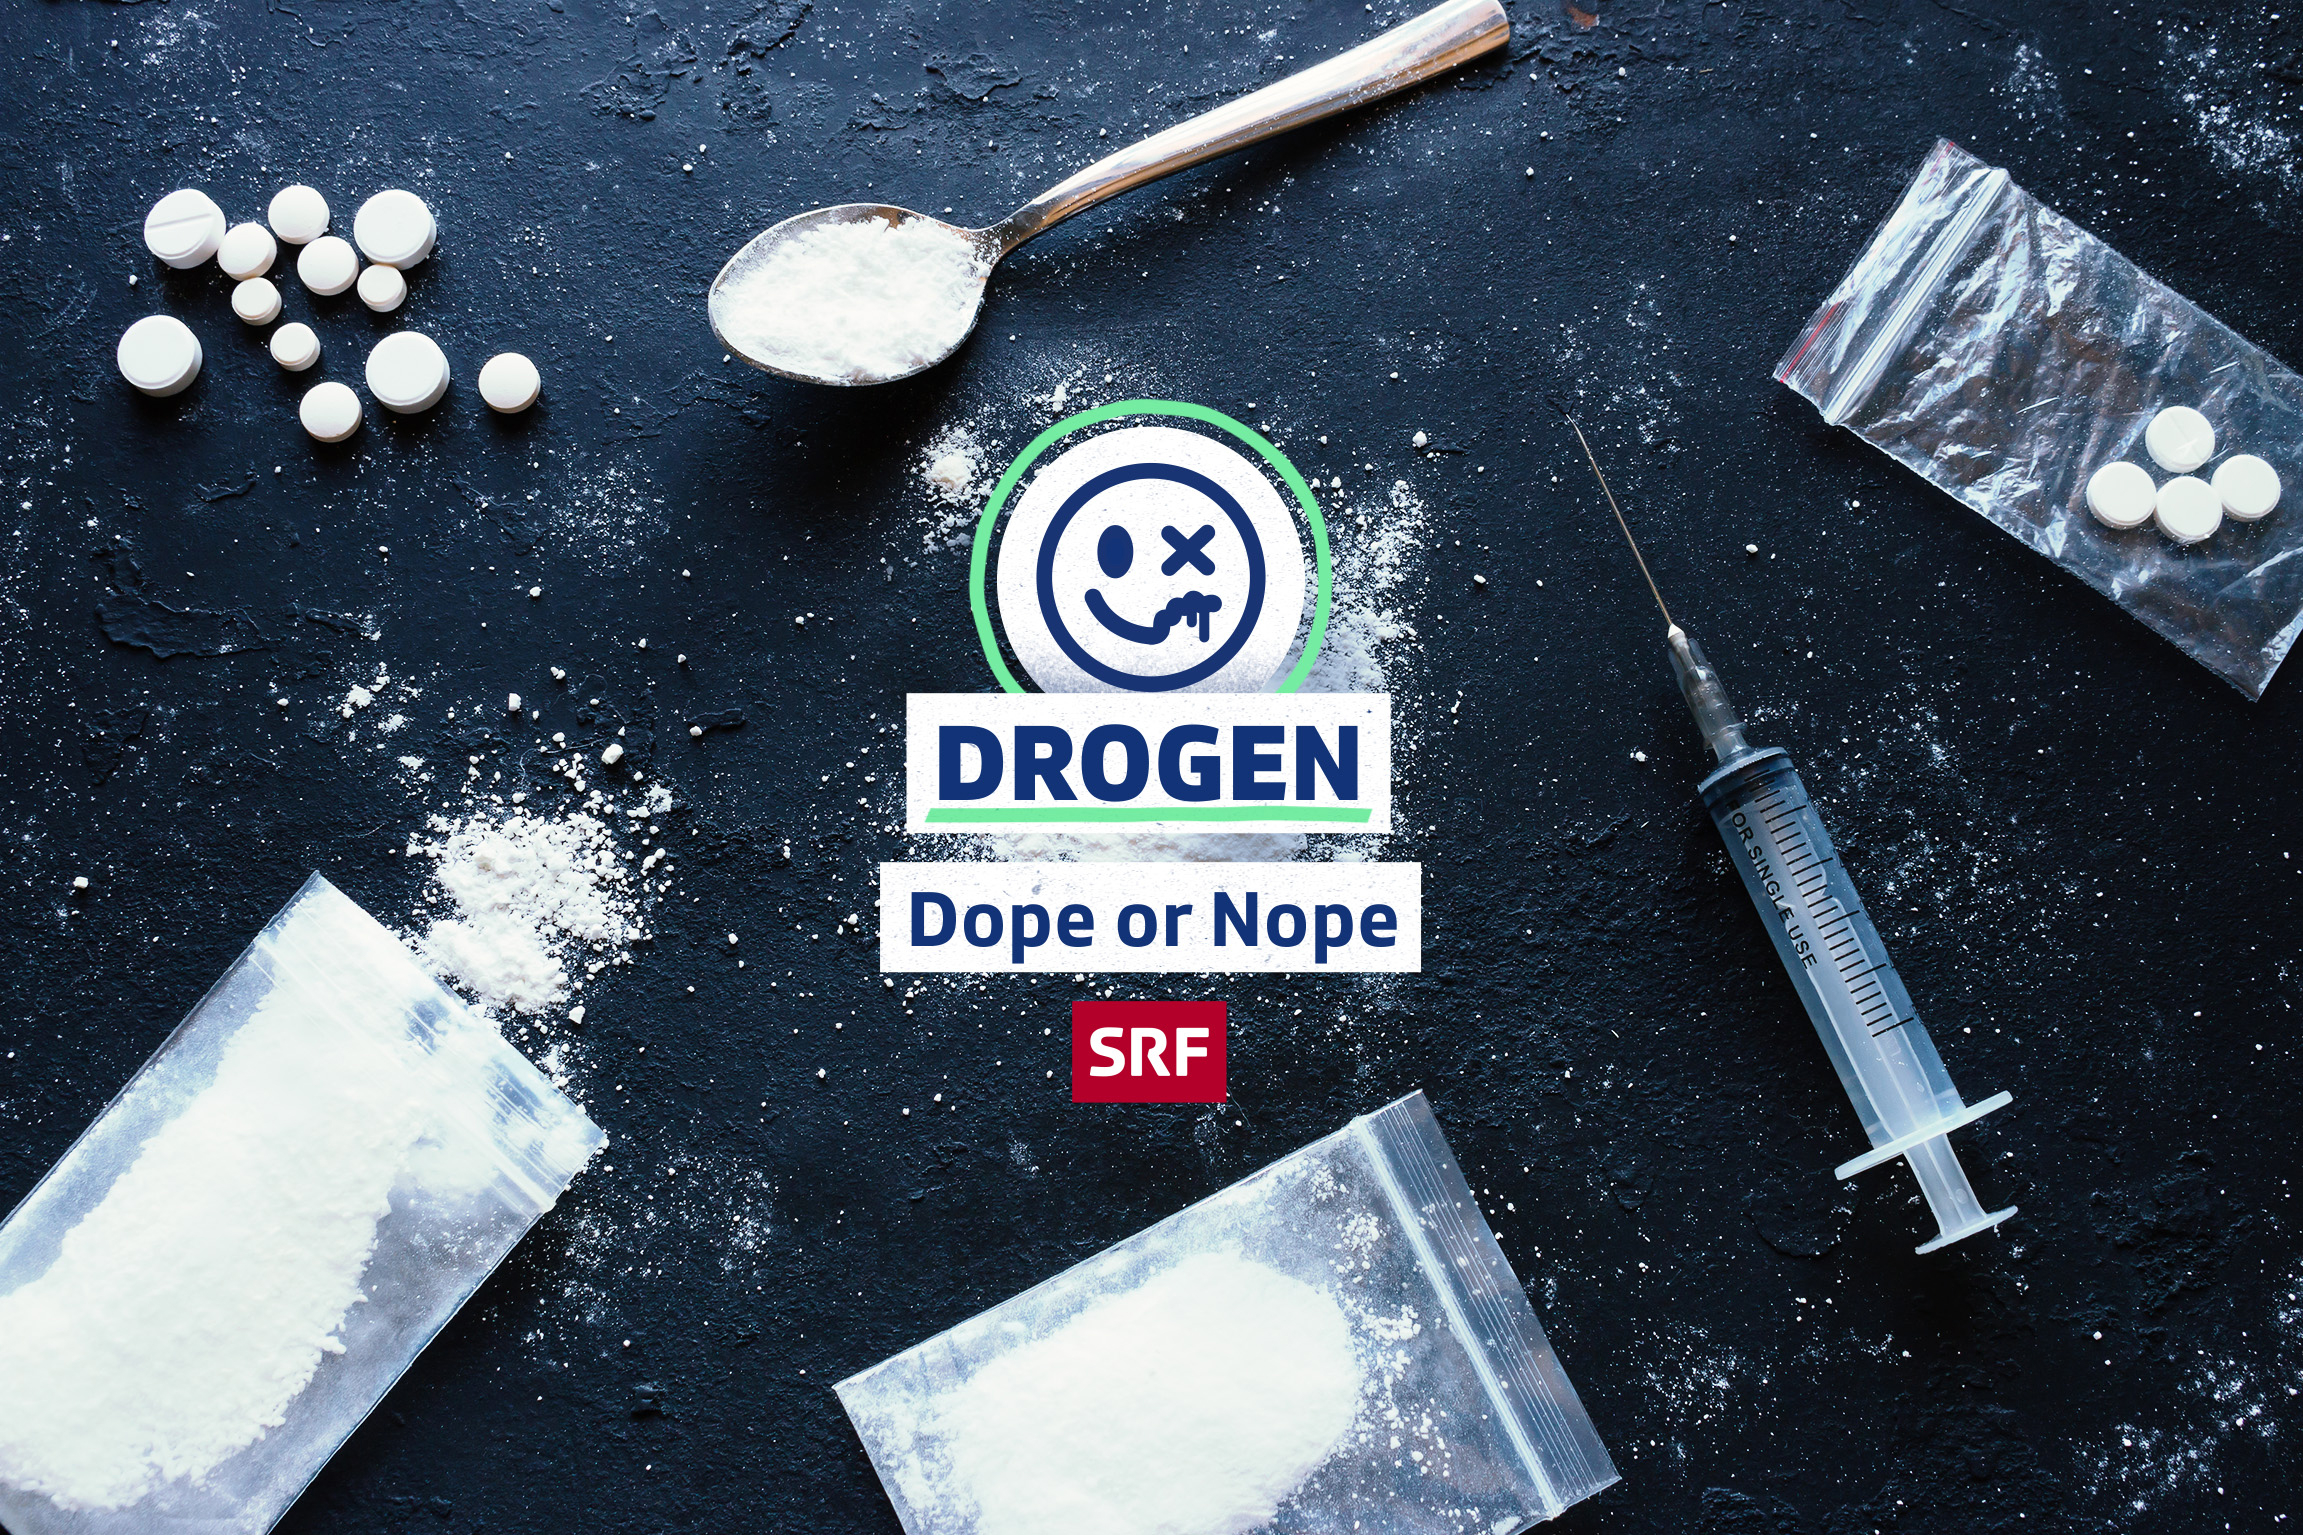 SRF School Drogen – Dope or Nope Keyvisual 2021